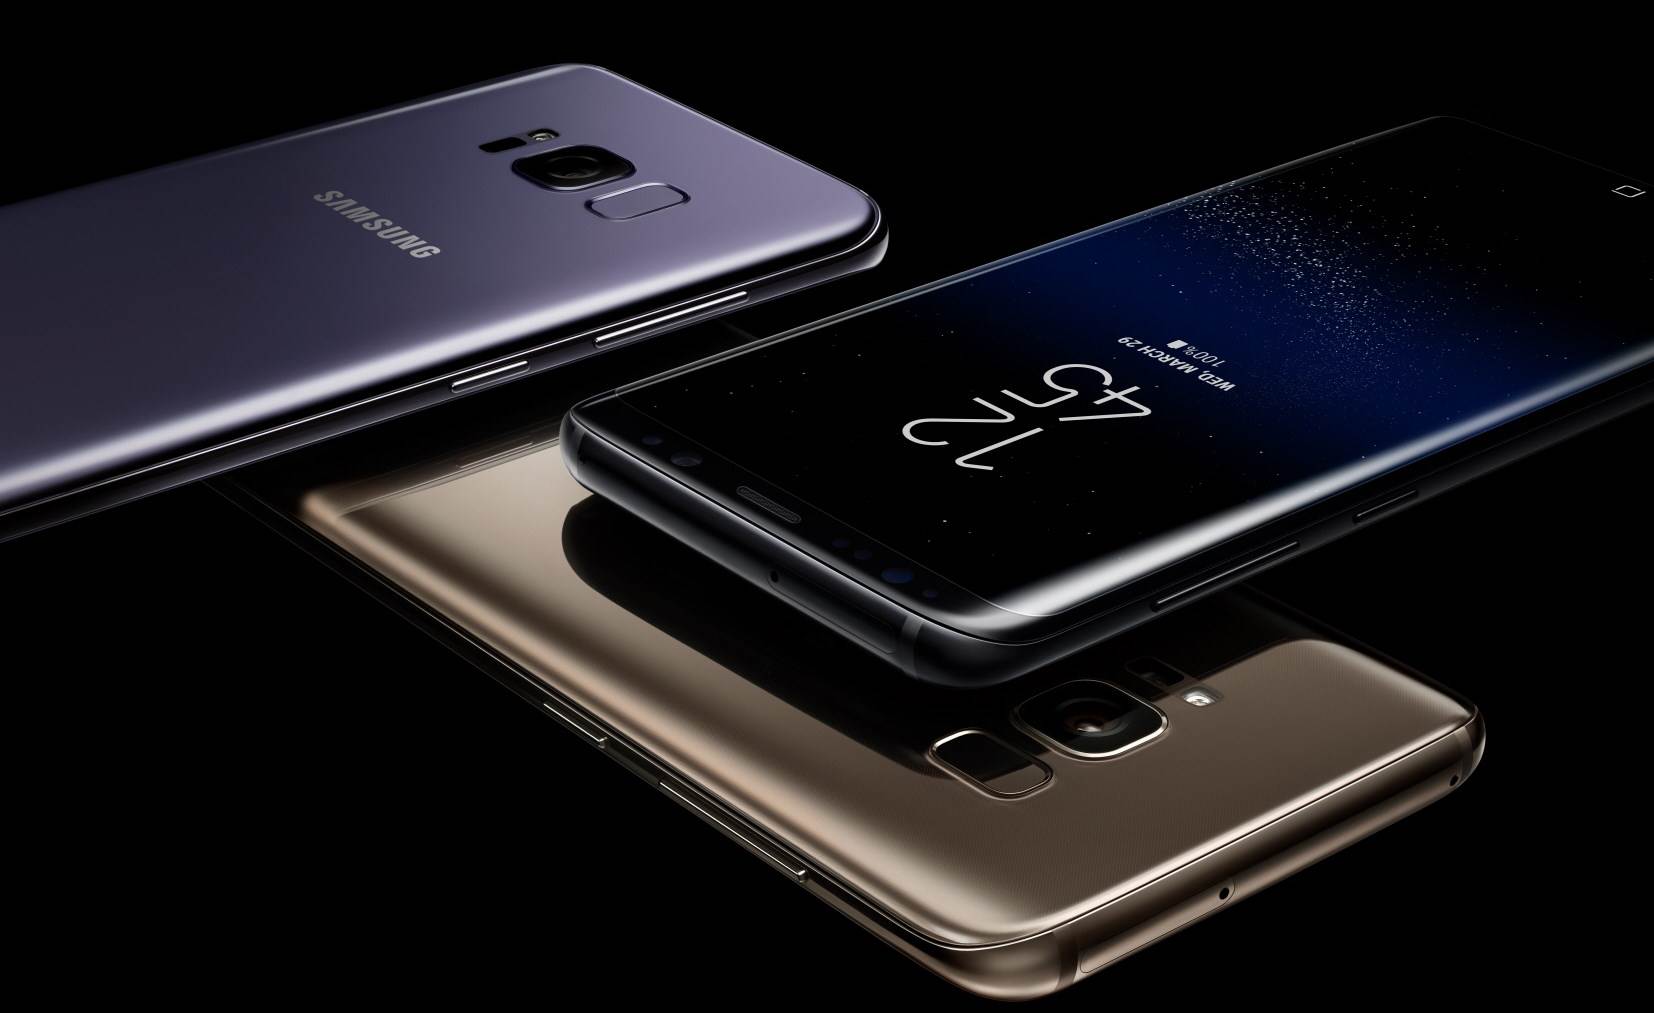  Samsung Galaxy S8 azuriranje softvera 